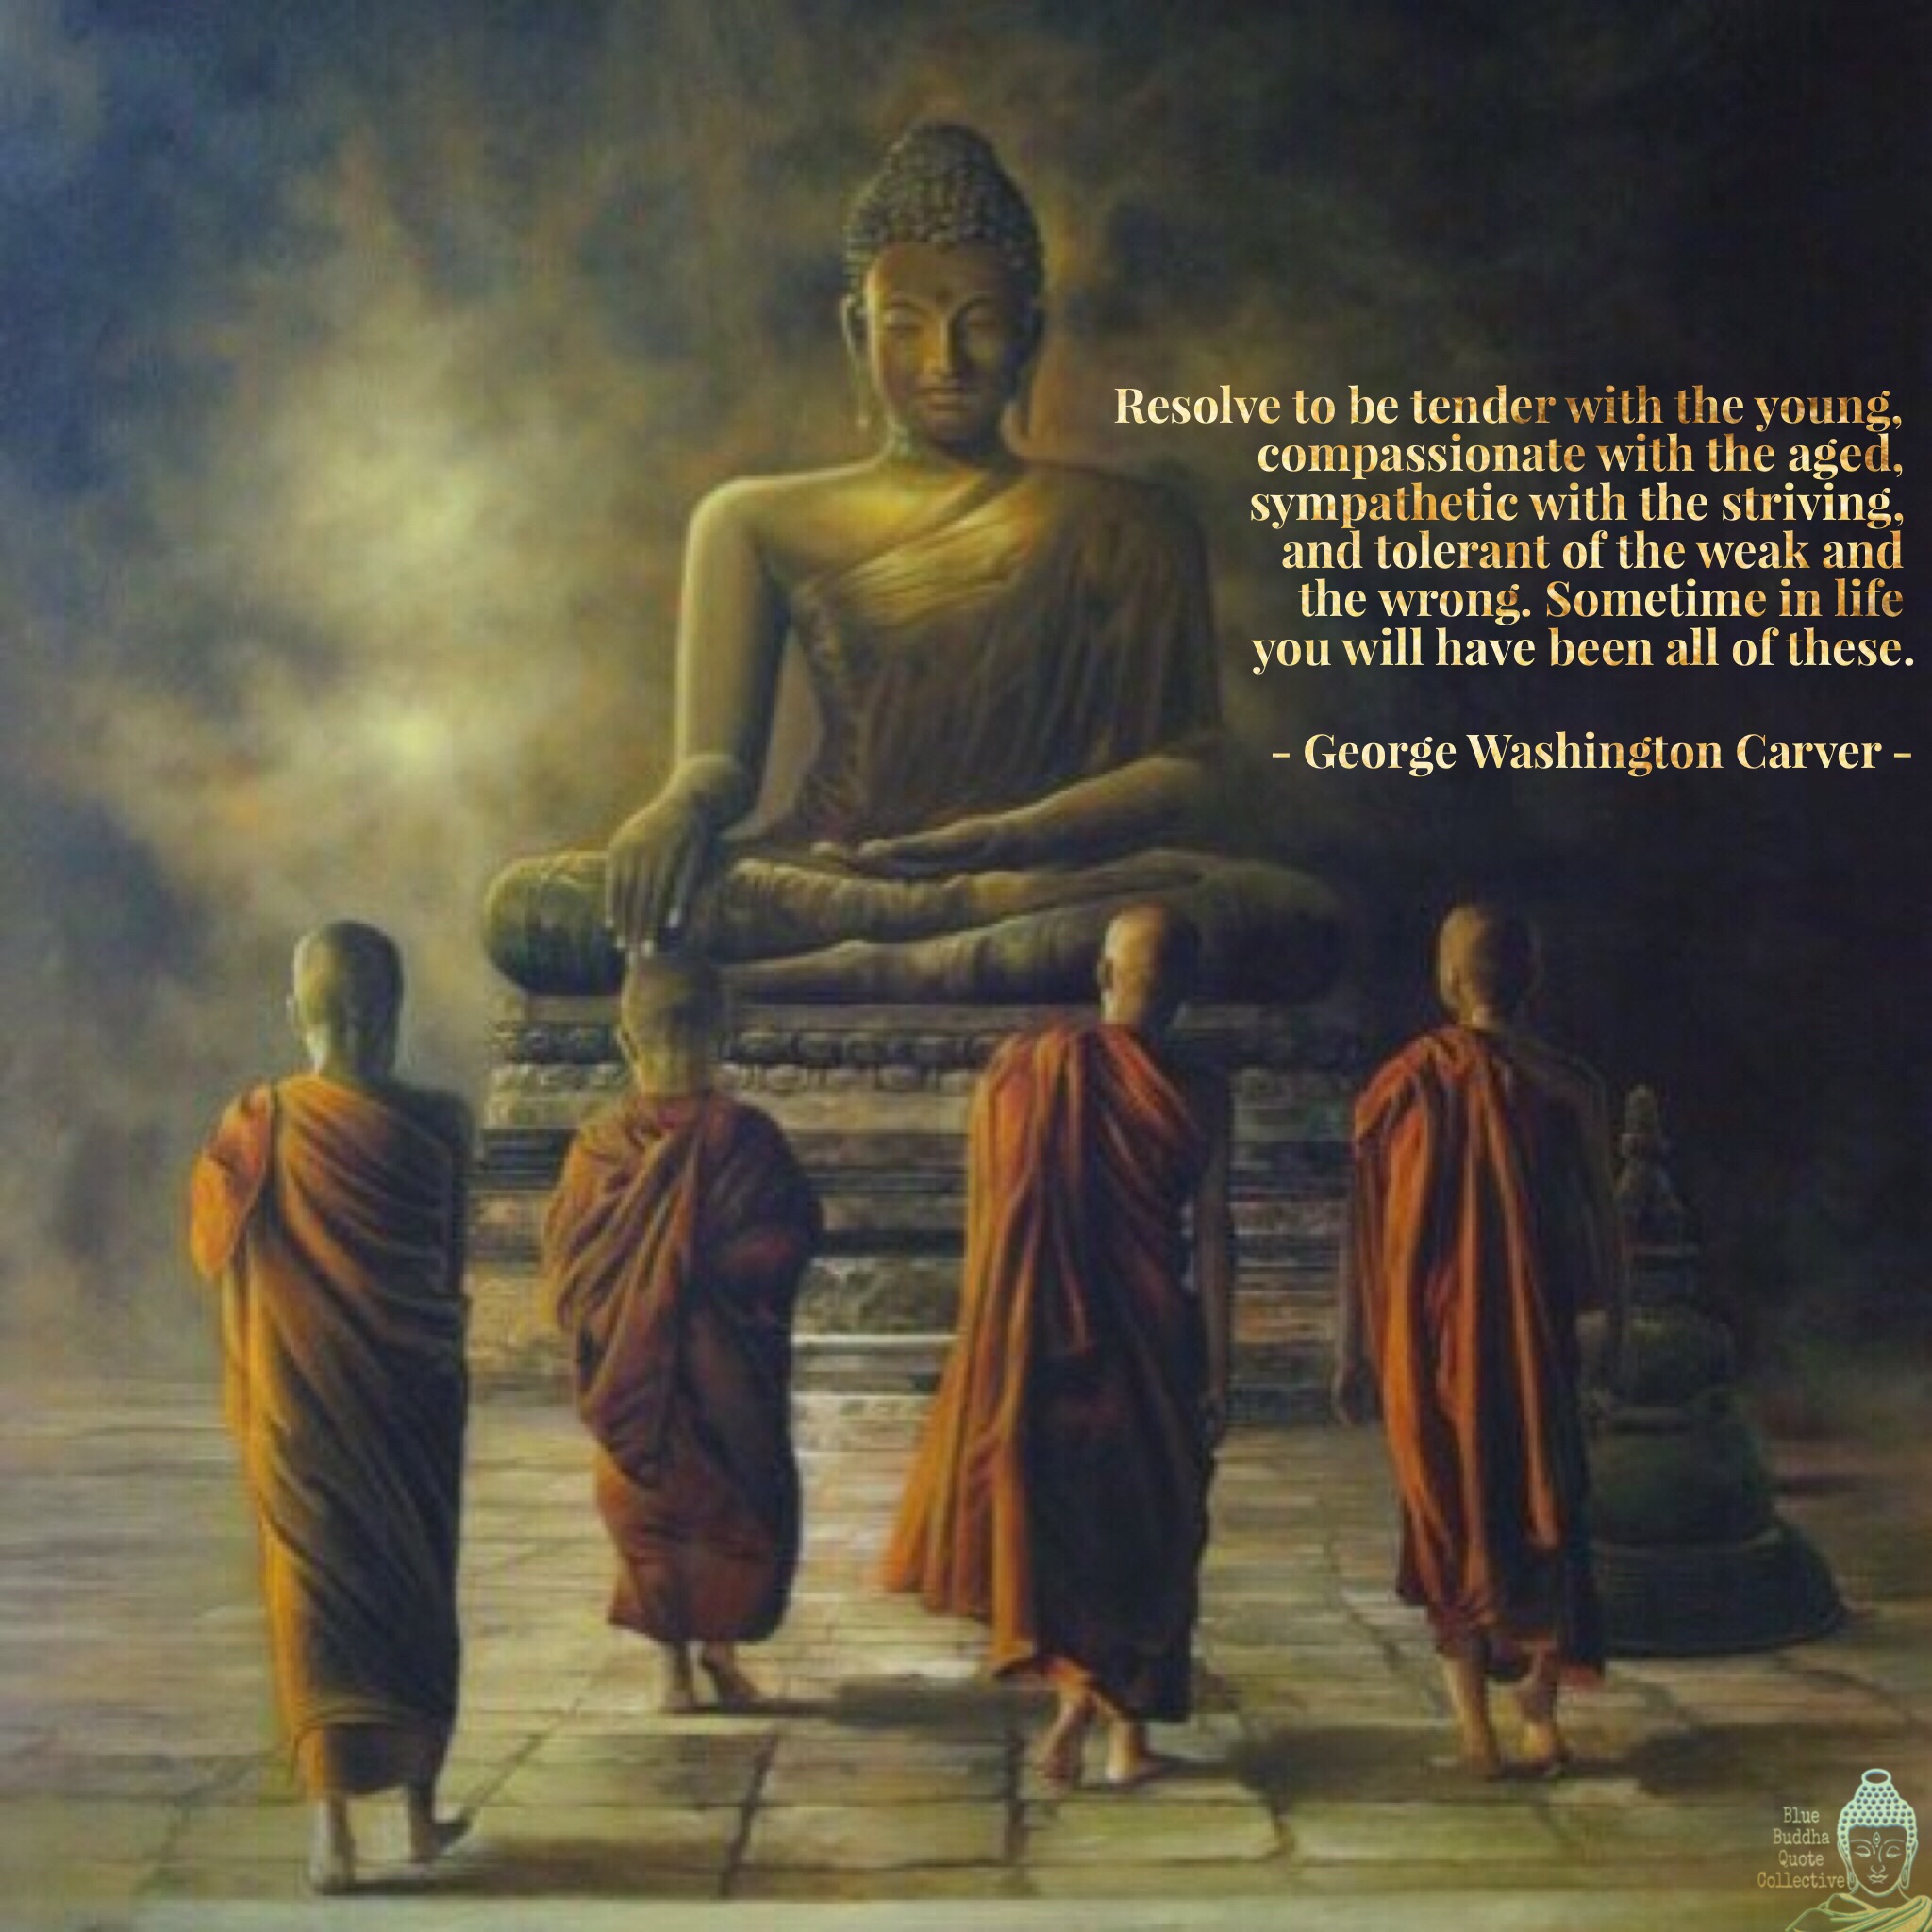 Буддийский монах в живописи